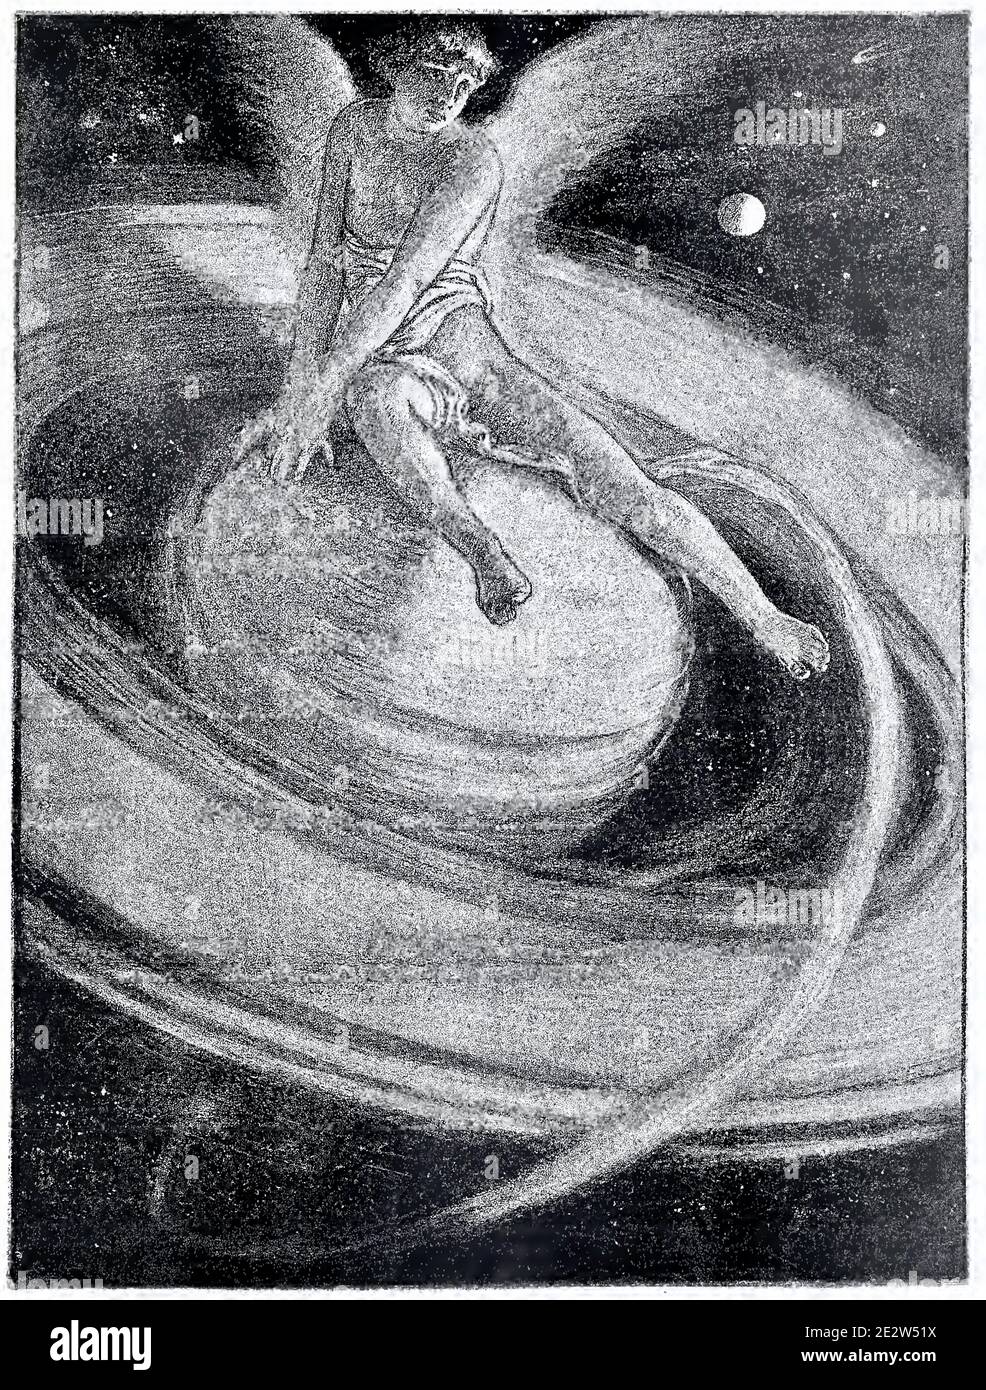 Un ange est assis à cheval sur la planète Saturne dans les œuvres d'art Le trône de Saturne par Elihu Vedder de 1884 Banque D'Images